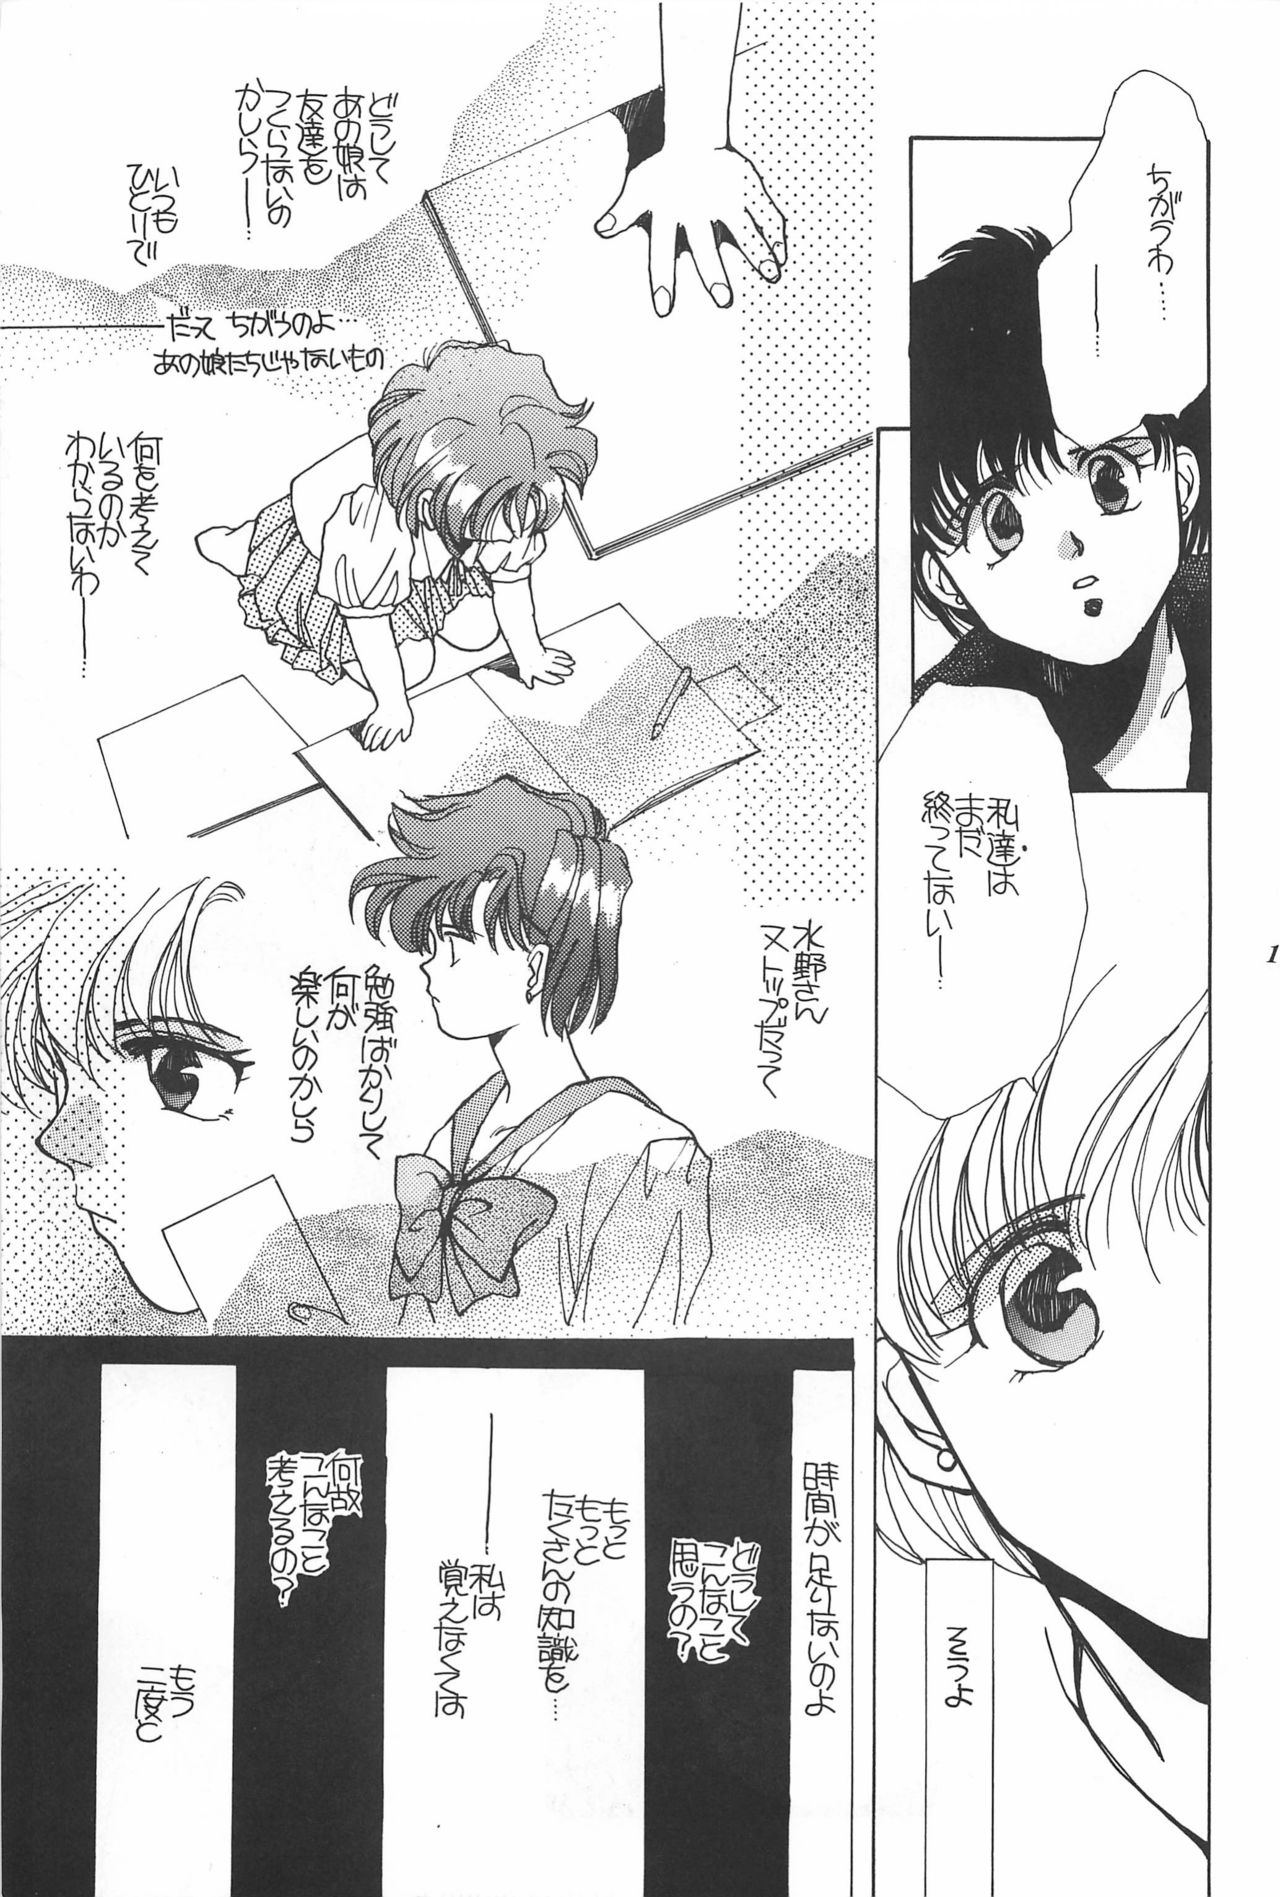 [Hello World (Muttri Moony)] Kaze no You ni Yume no You ni - Sailor Moon Collection (Sailor Moon) 186